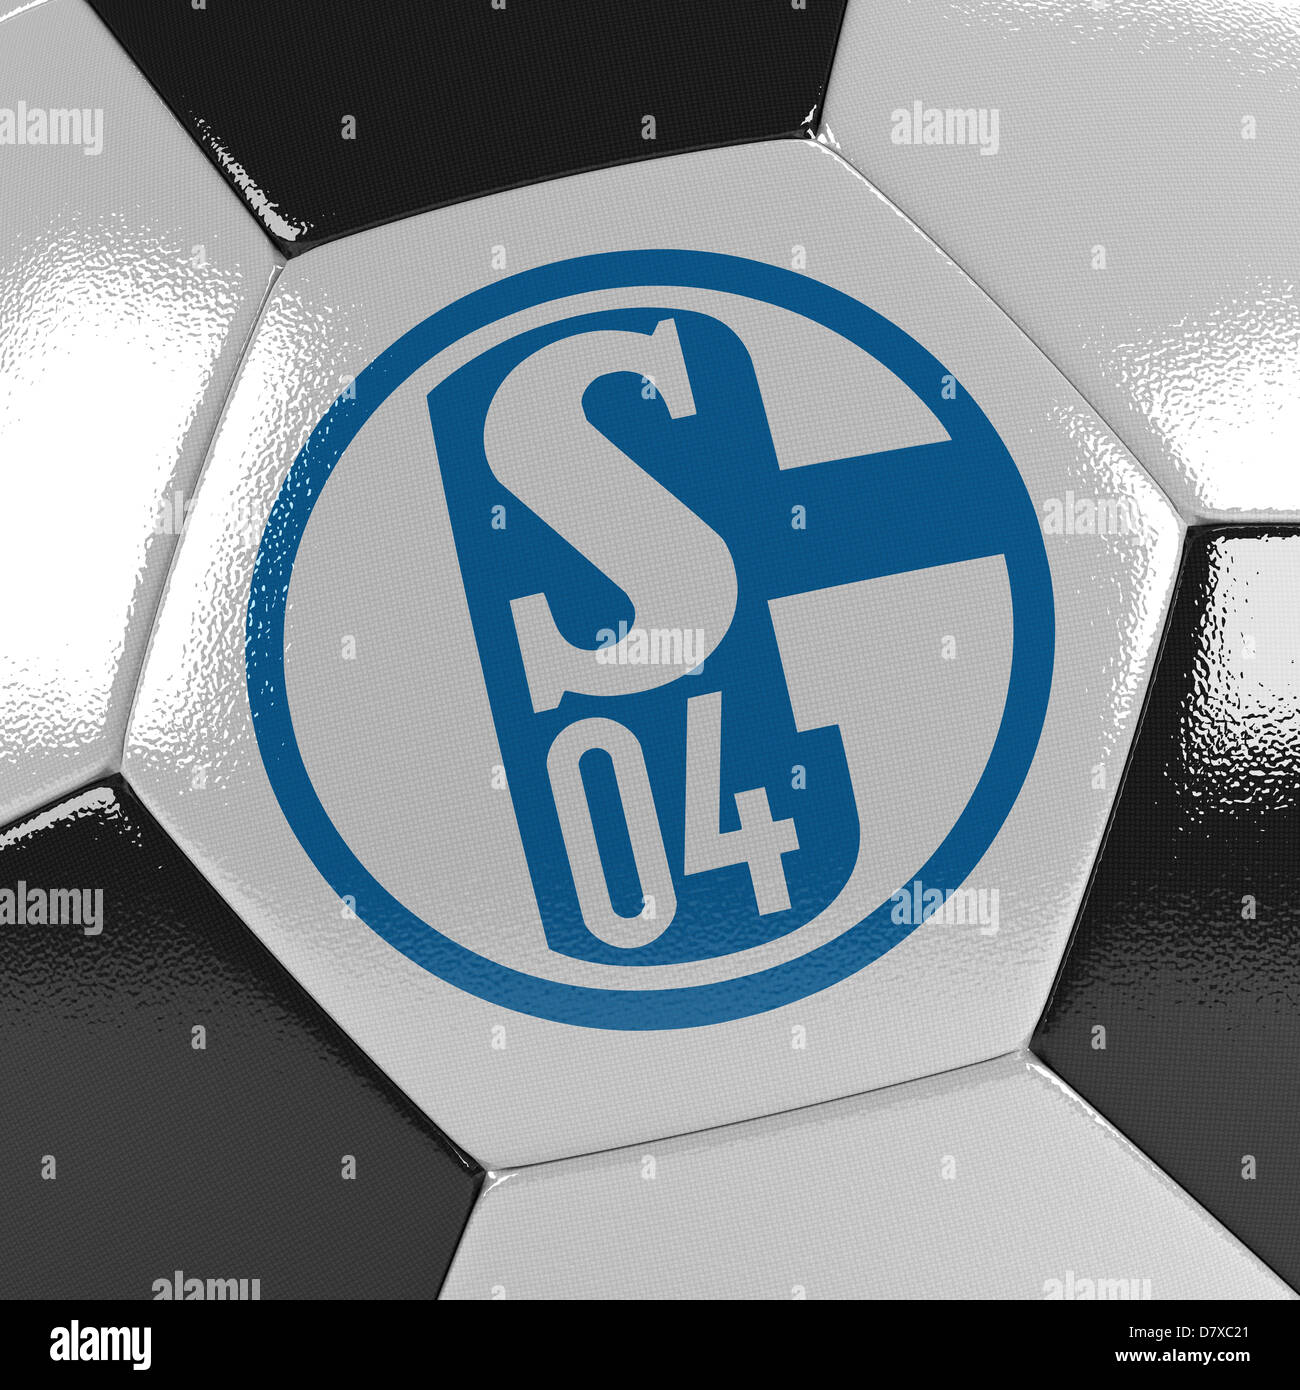 Le FC Schalke 04 soccer ball Banque D'Images